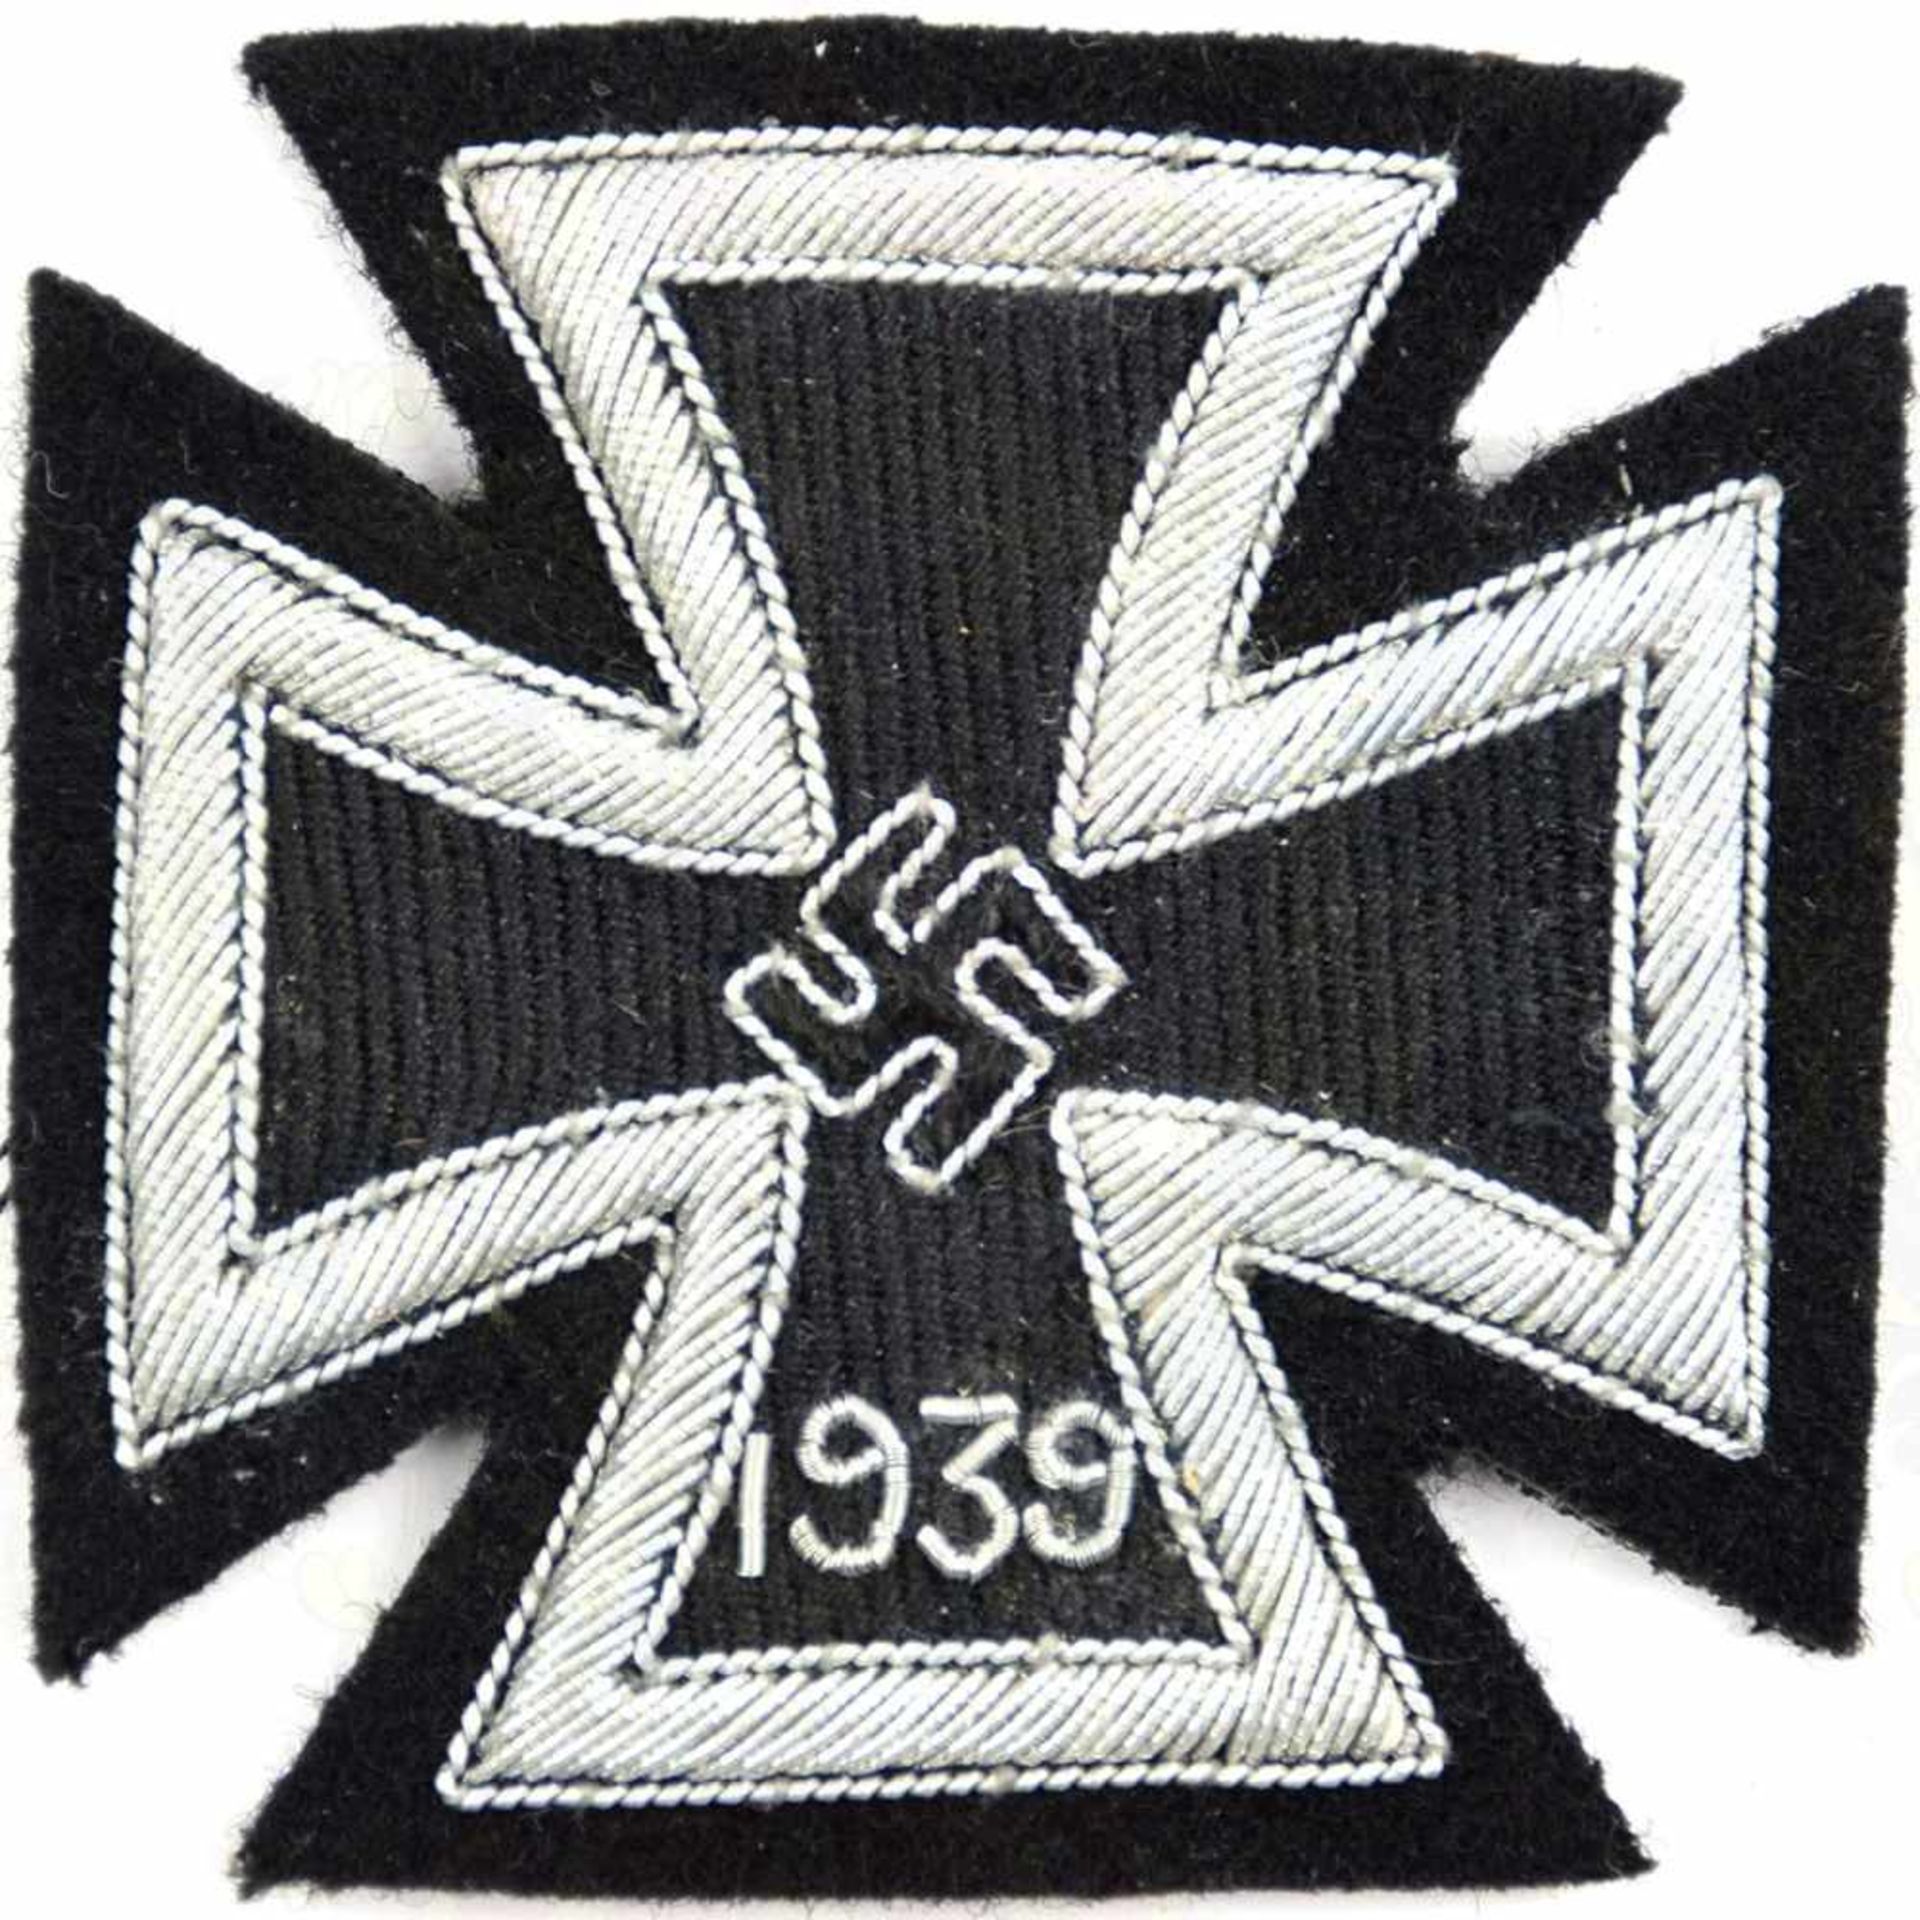 EK I 1939, Textilausführung, schwarzes Tuch, Zarge u. HK in silberfarb. Metallfaden-Stickerei,